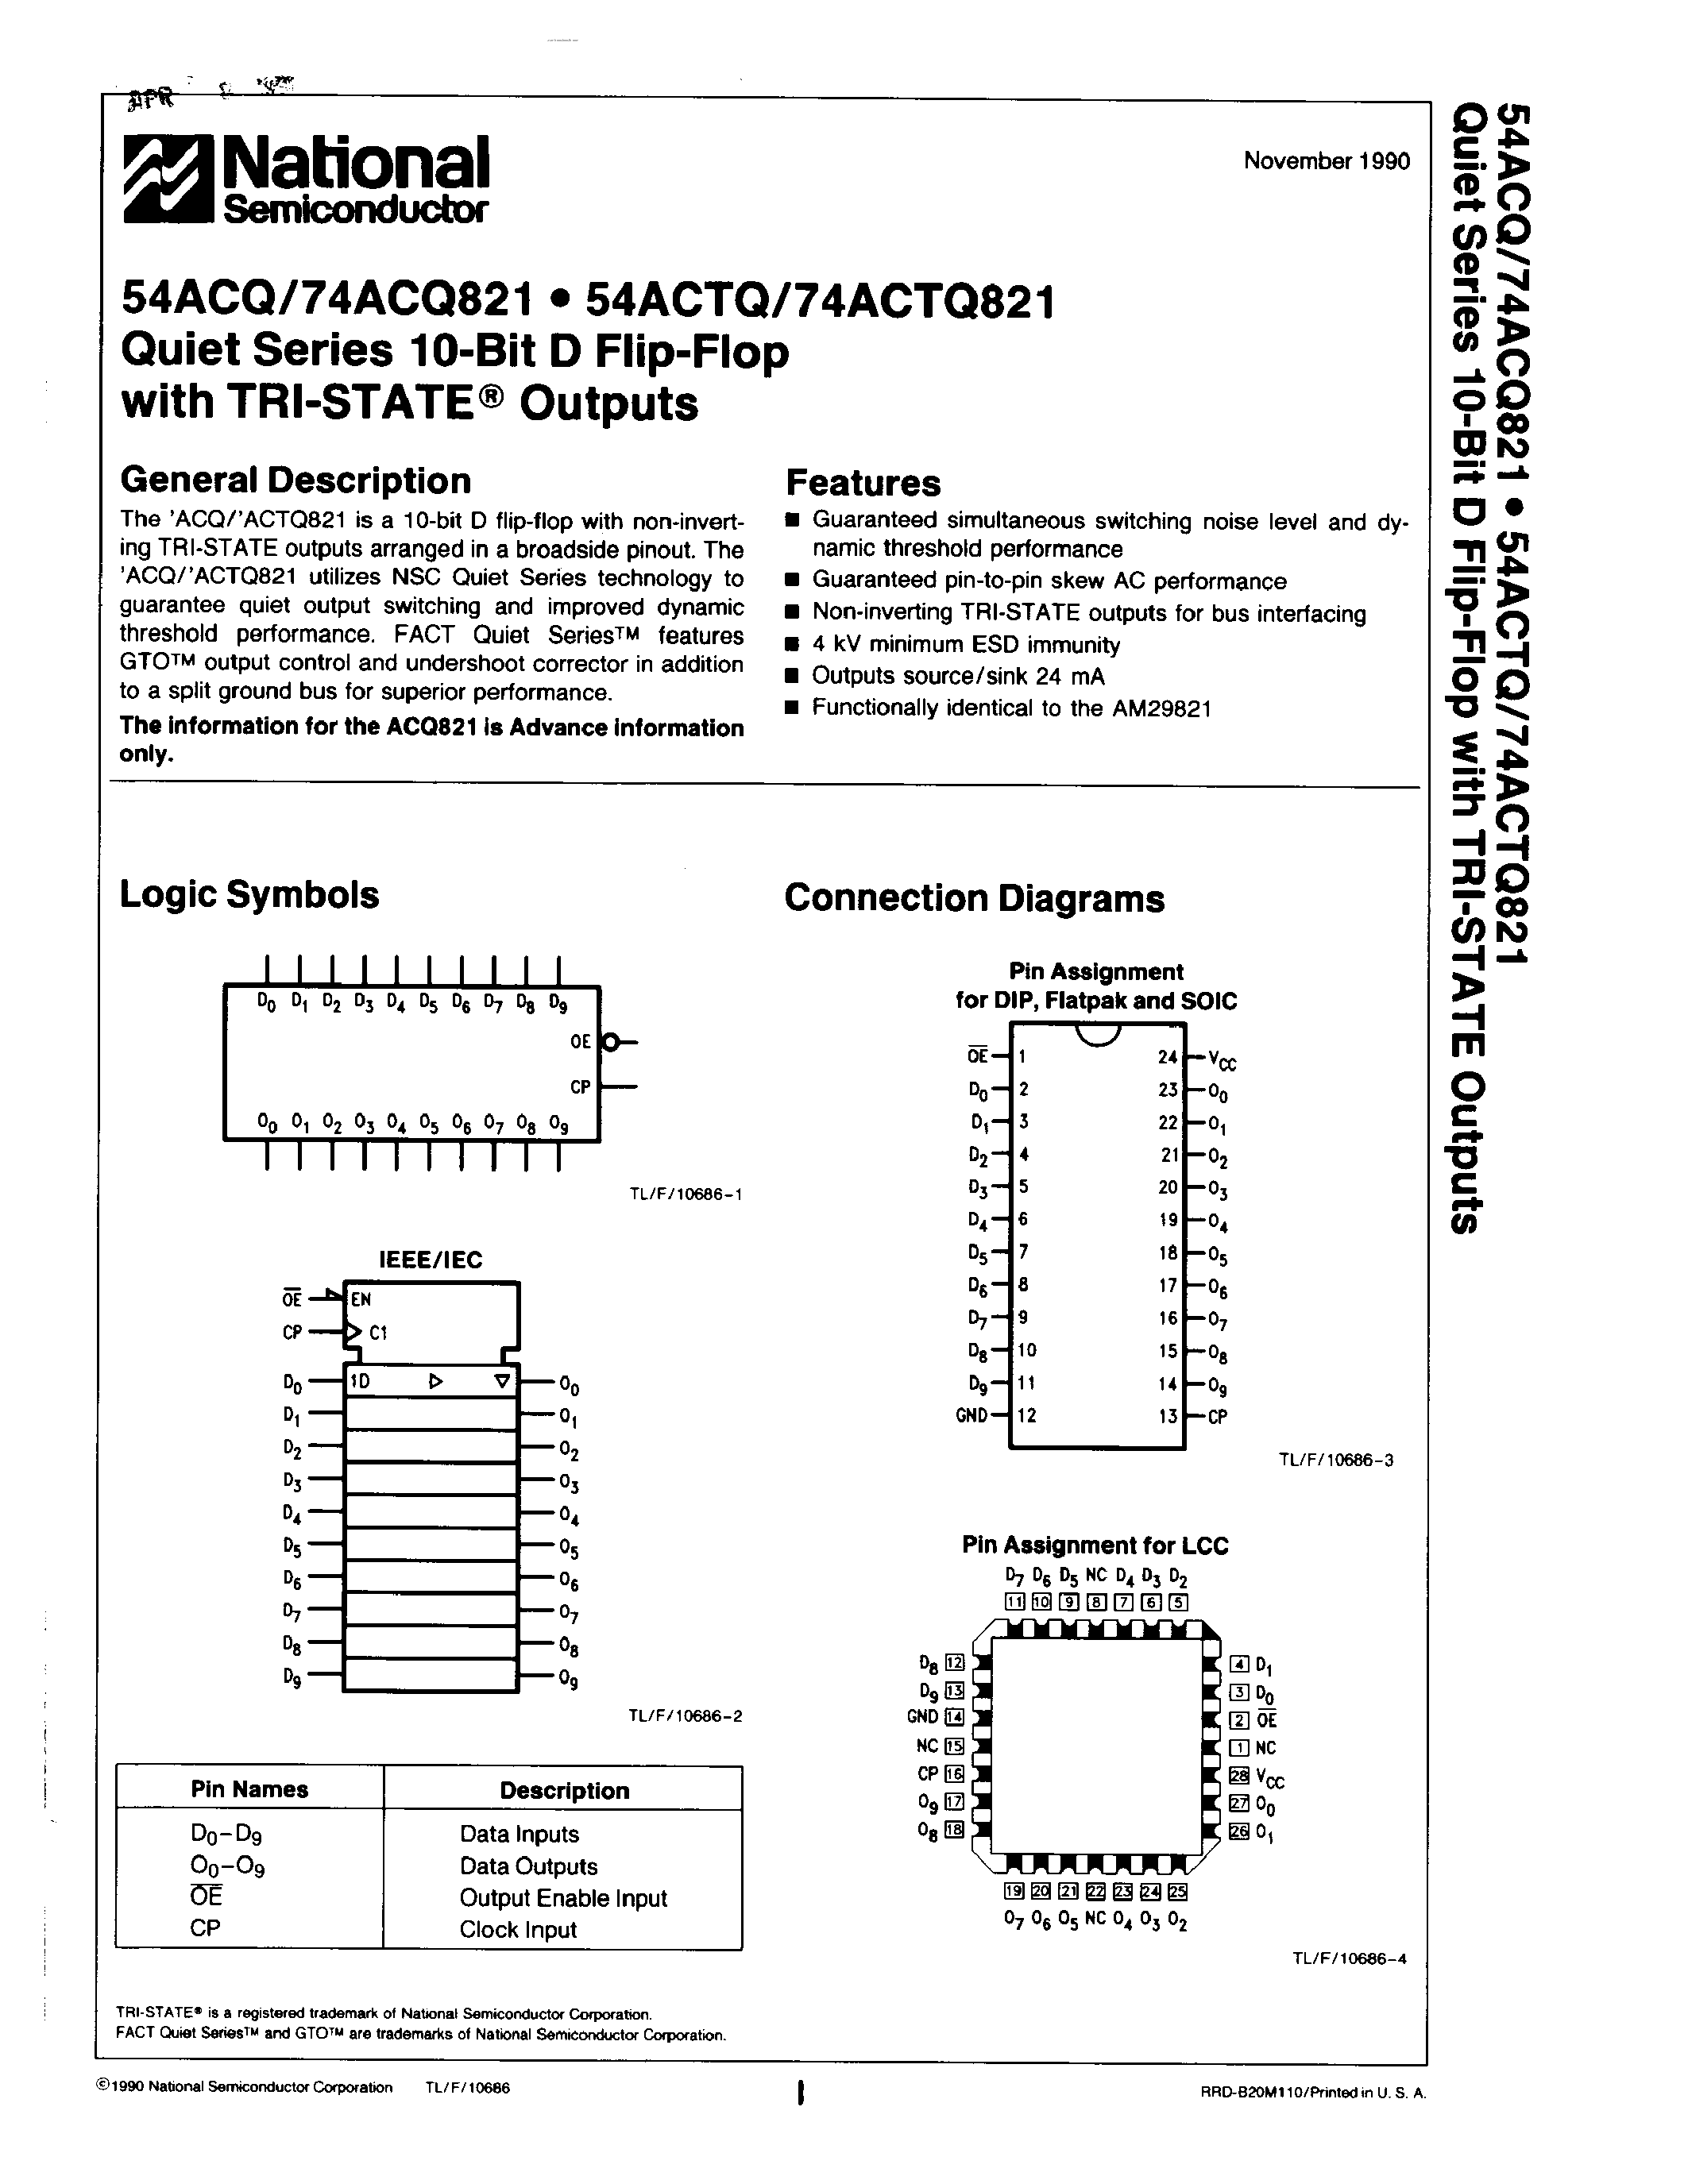 Datasheet 54ACQ821 - Quiet Series 10-Bit D Flip-Flop page 1